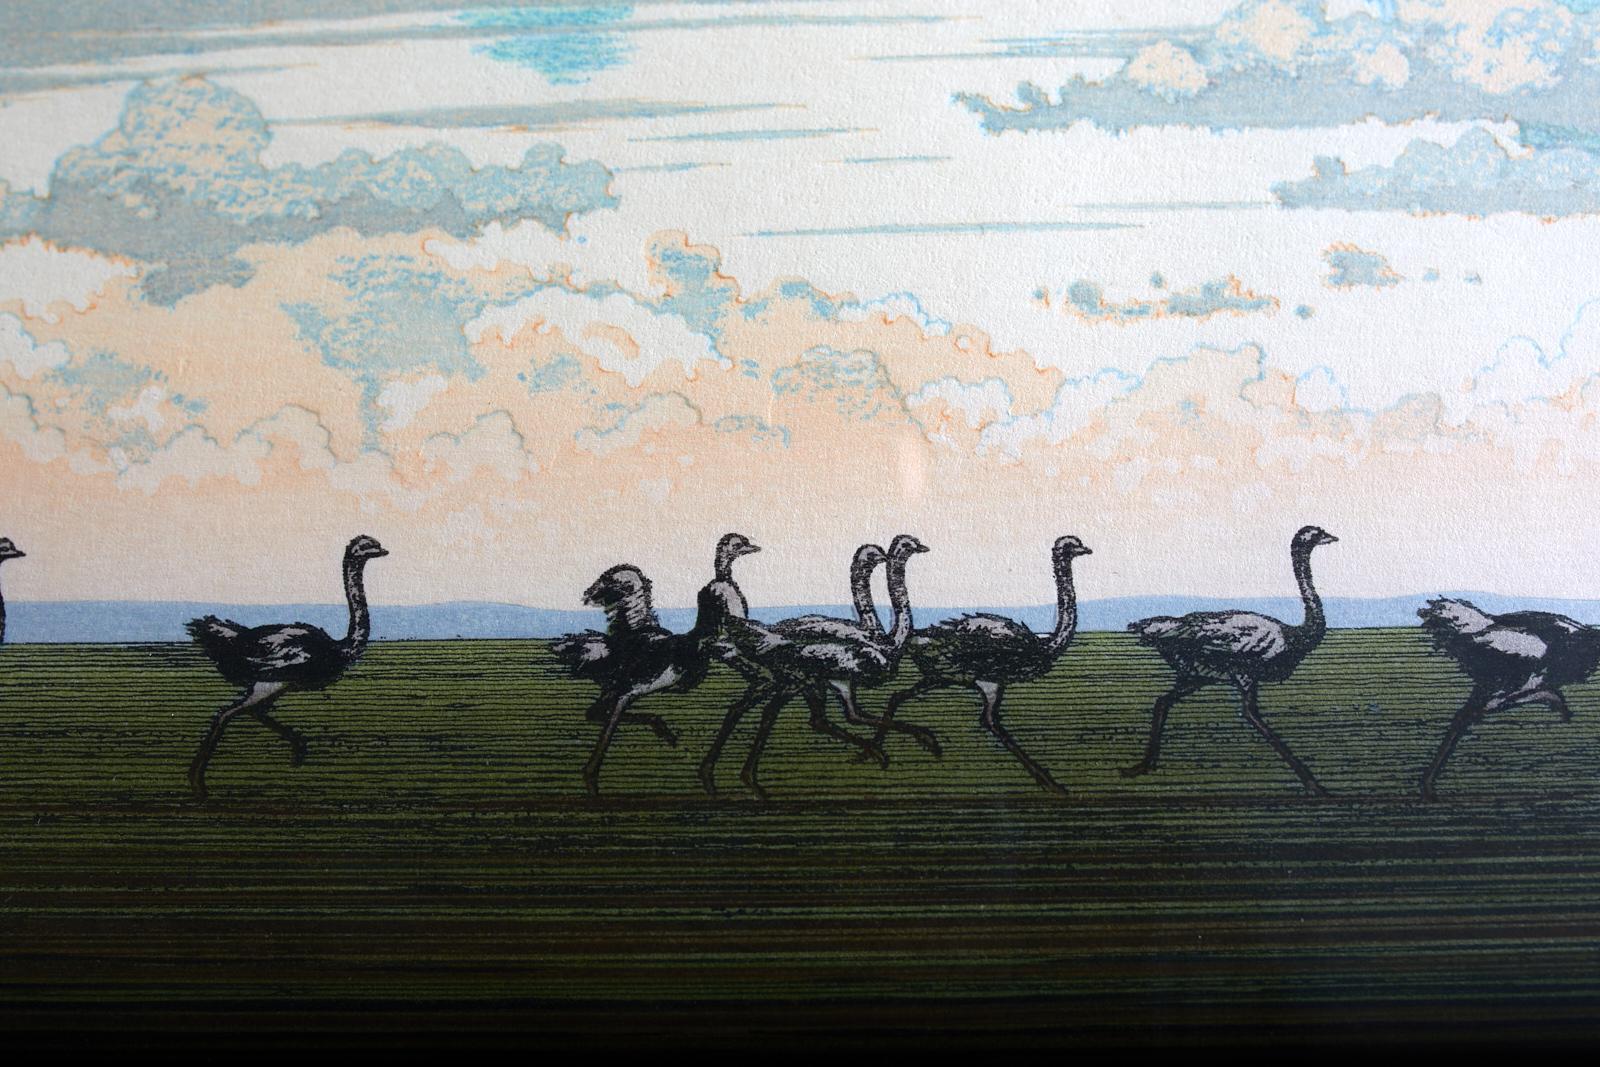 Ostrich Landscape Framed Wood Block Print 2